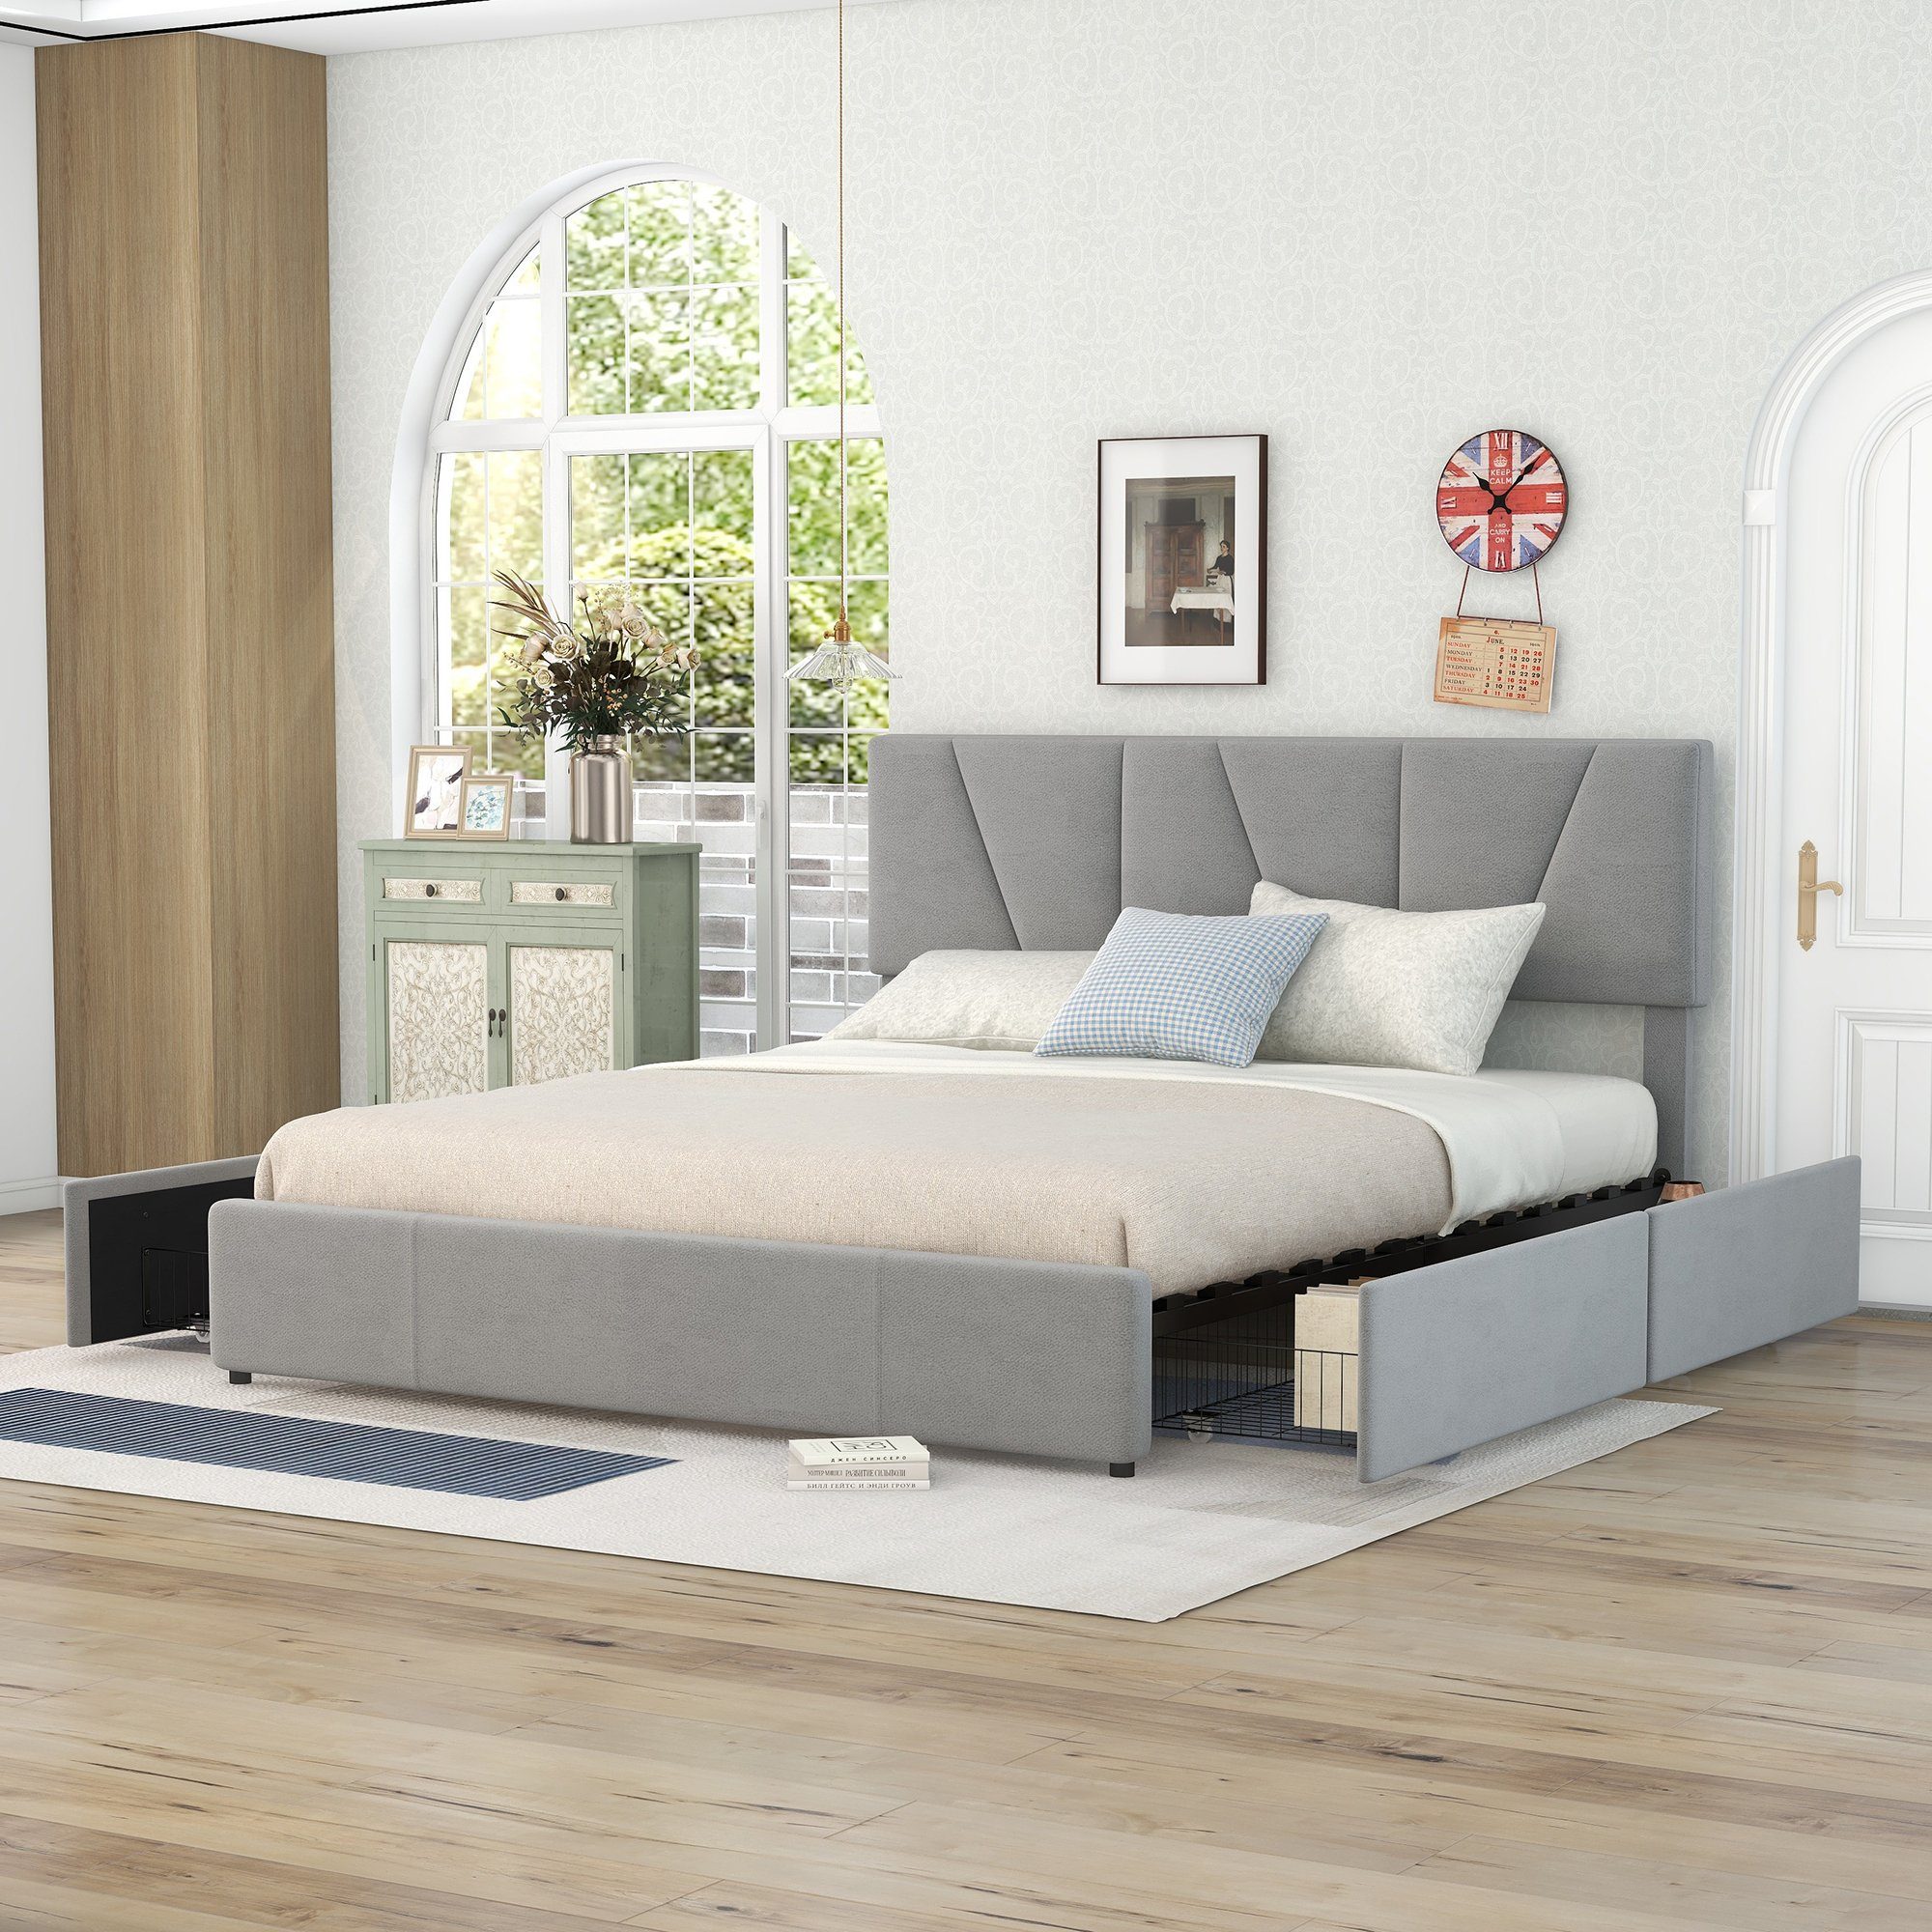 OKWISH Bett Double Size Polster Plattform Bett, gepolstertes Bett (mit vier Schubladen auf zwei Seiten,Verstellbares Kopfteil, 160 x 200 cm), Ohne Matratze grau